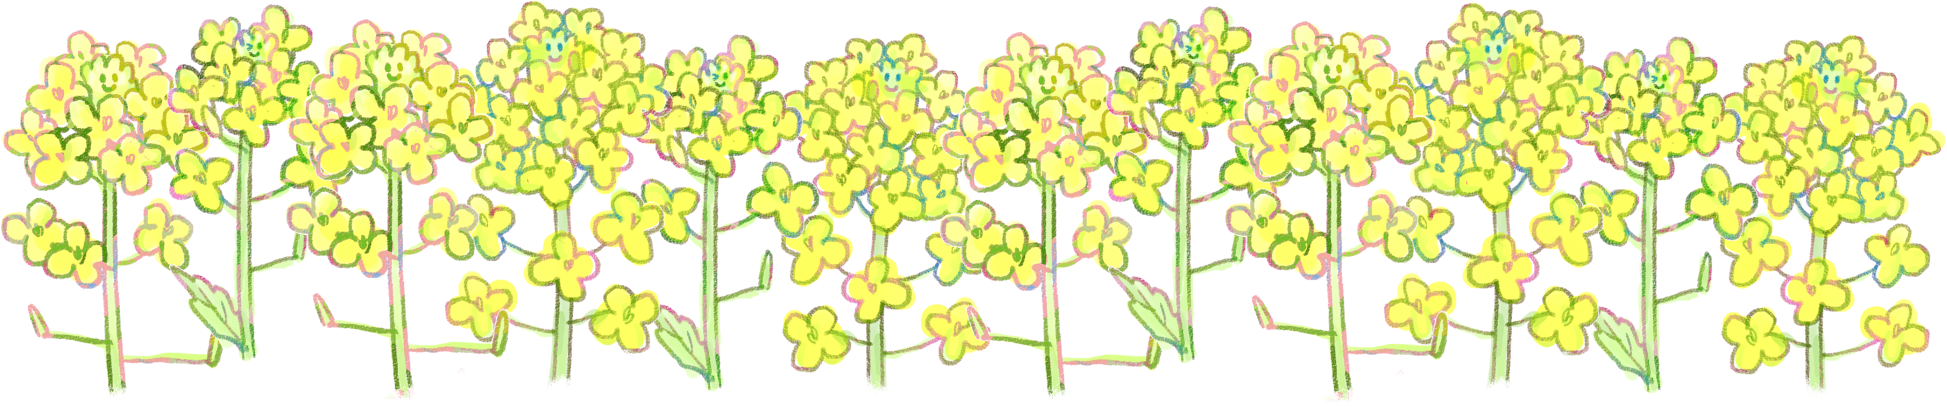 菜の花イラスト 早春の挿絵に 1輪 3輪 ライン 可愛い無料イラスト素材集